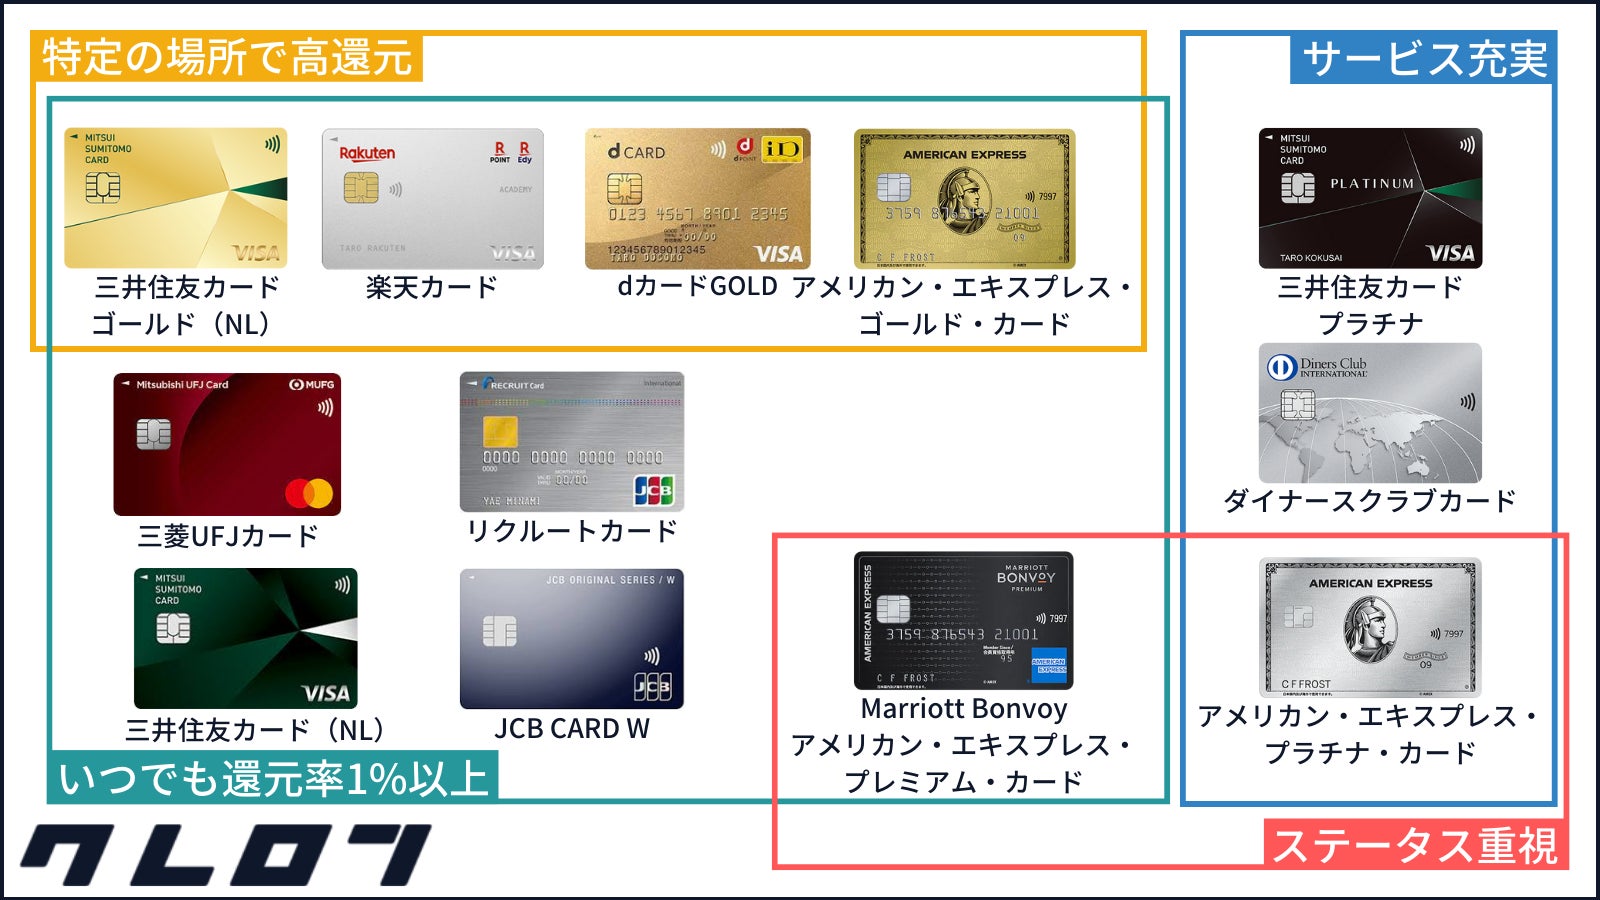 「(改訂)クレジットカード究極の1枚に関するカオスマップ」を金融メディア「クレロン」にて公開しました